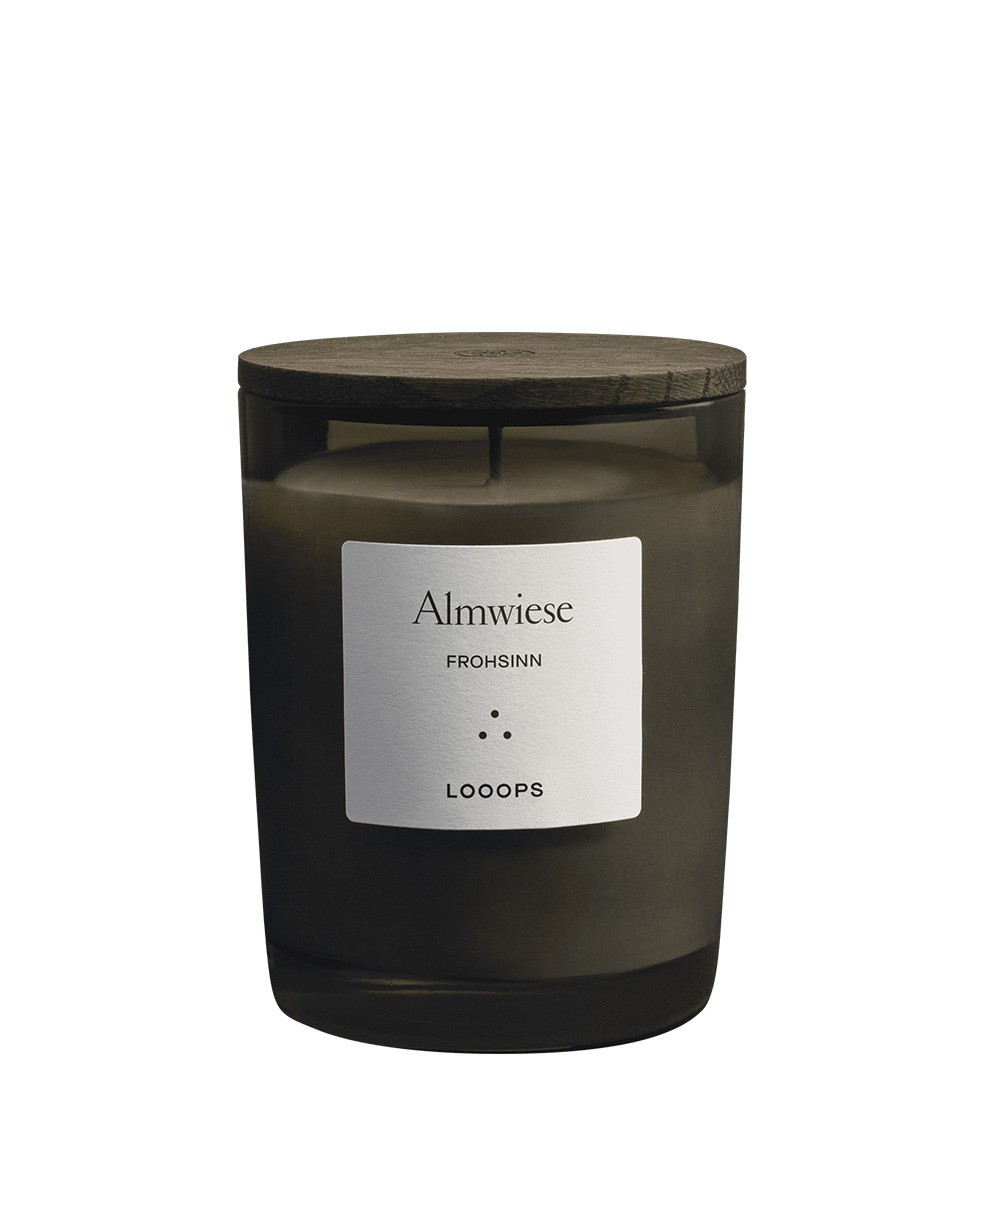 Das Produktbild zeigt die Duftkerze „Almwiese“ in der Größe 250g von Looops - RAUM concept store